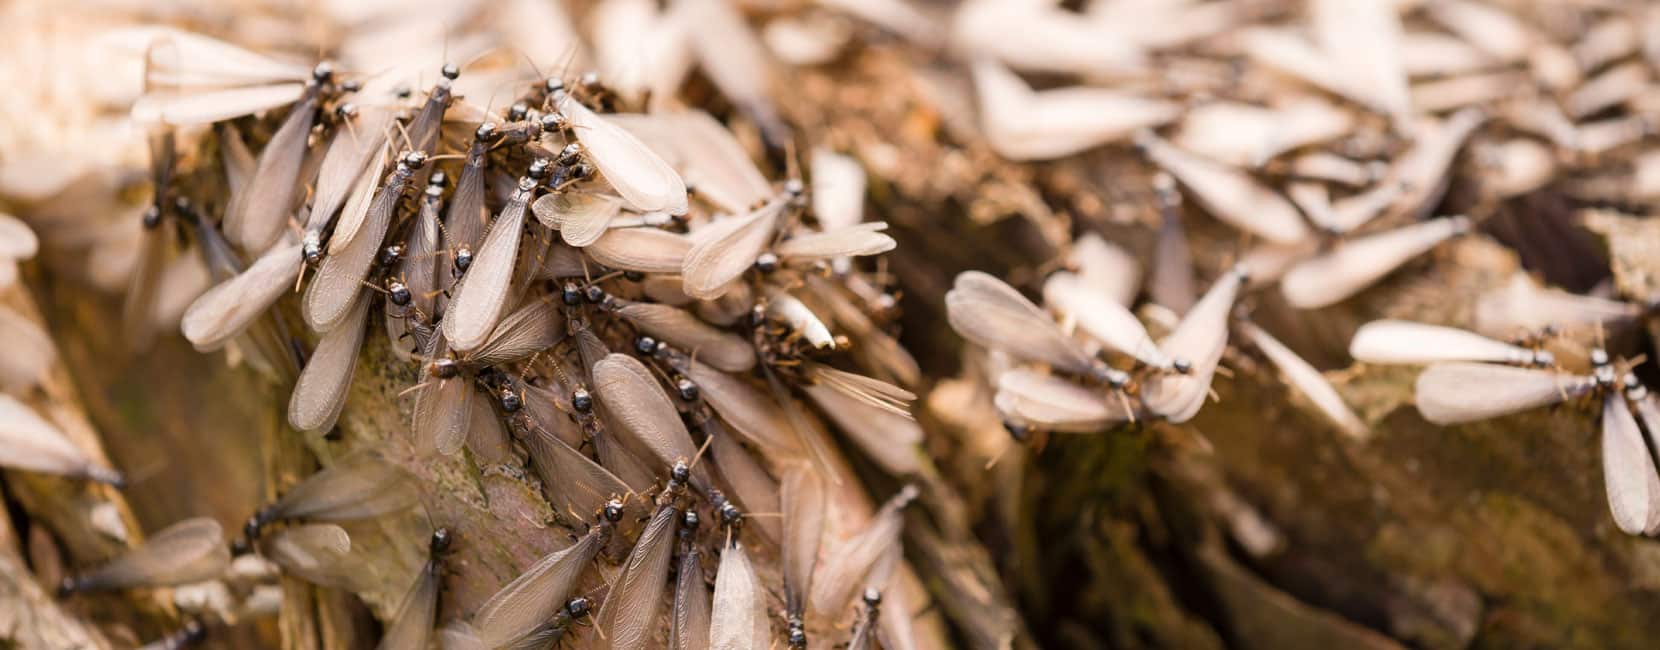 Termite Swarming Ant